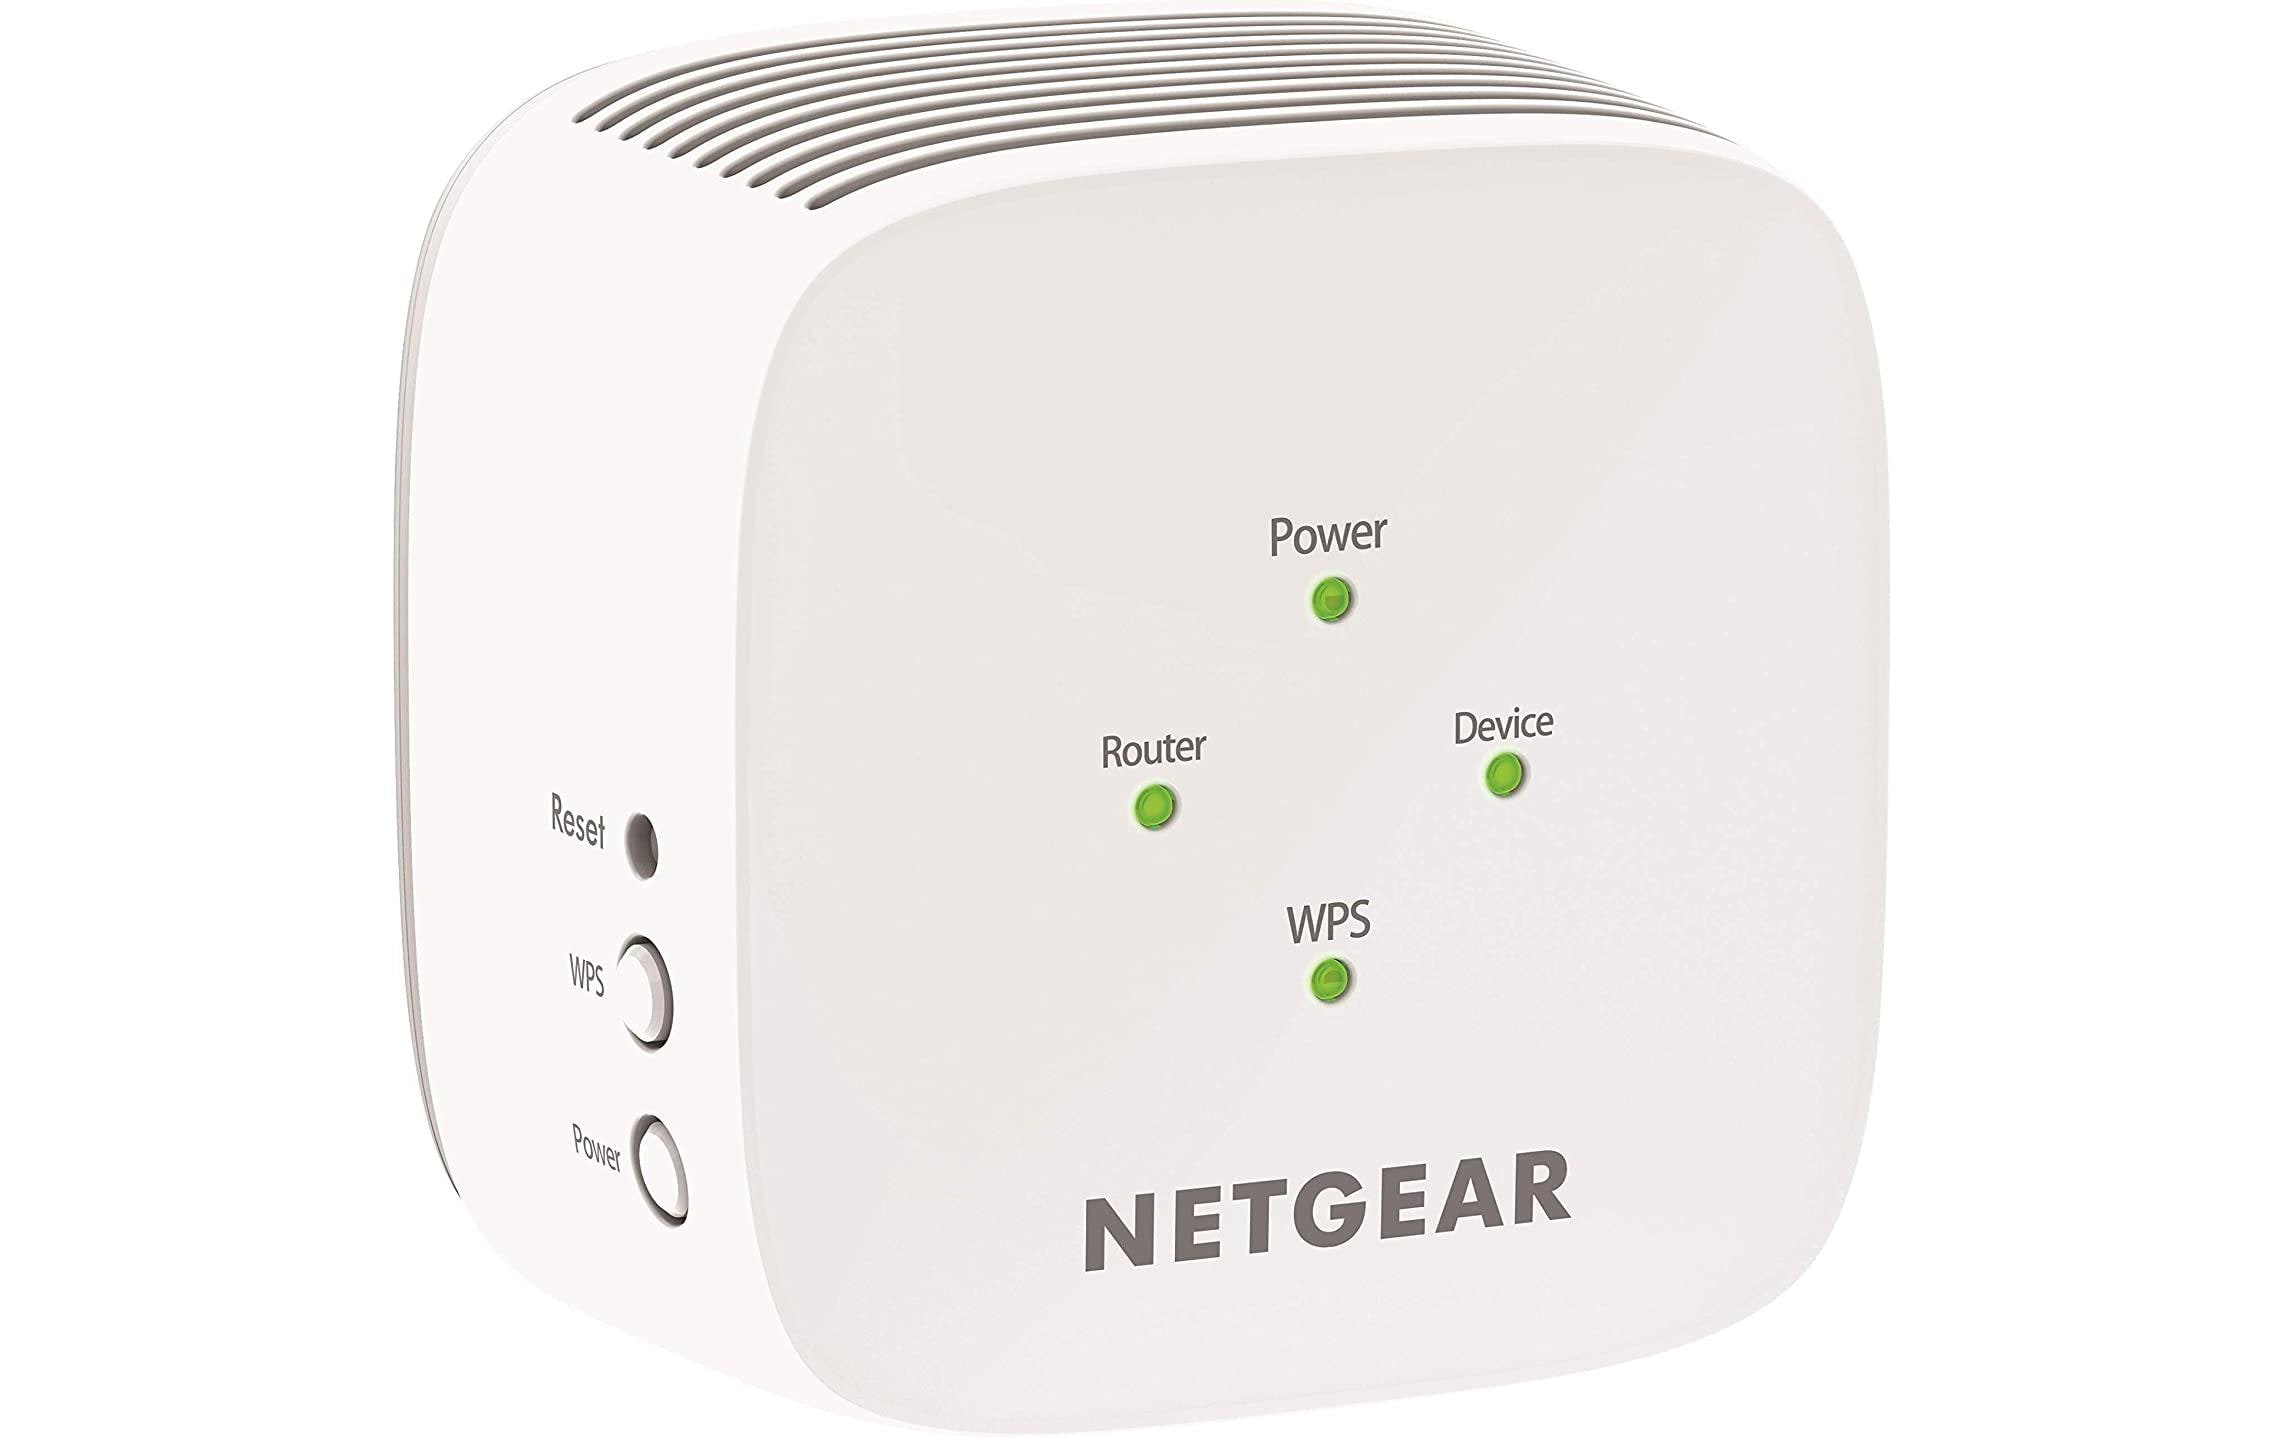 Netgear WLAN-Repeater EX3110